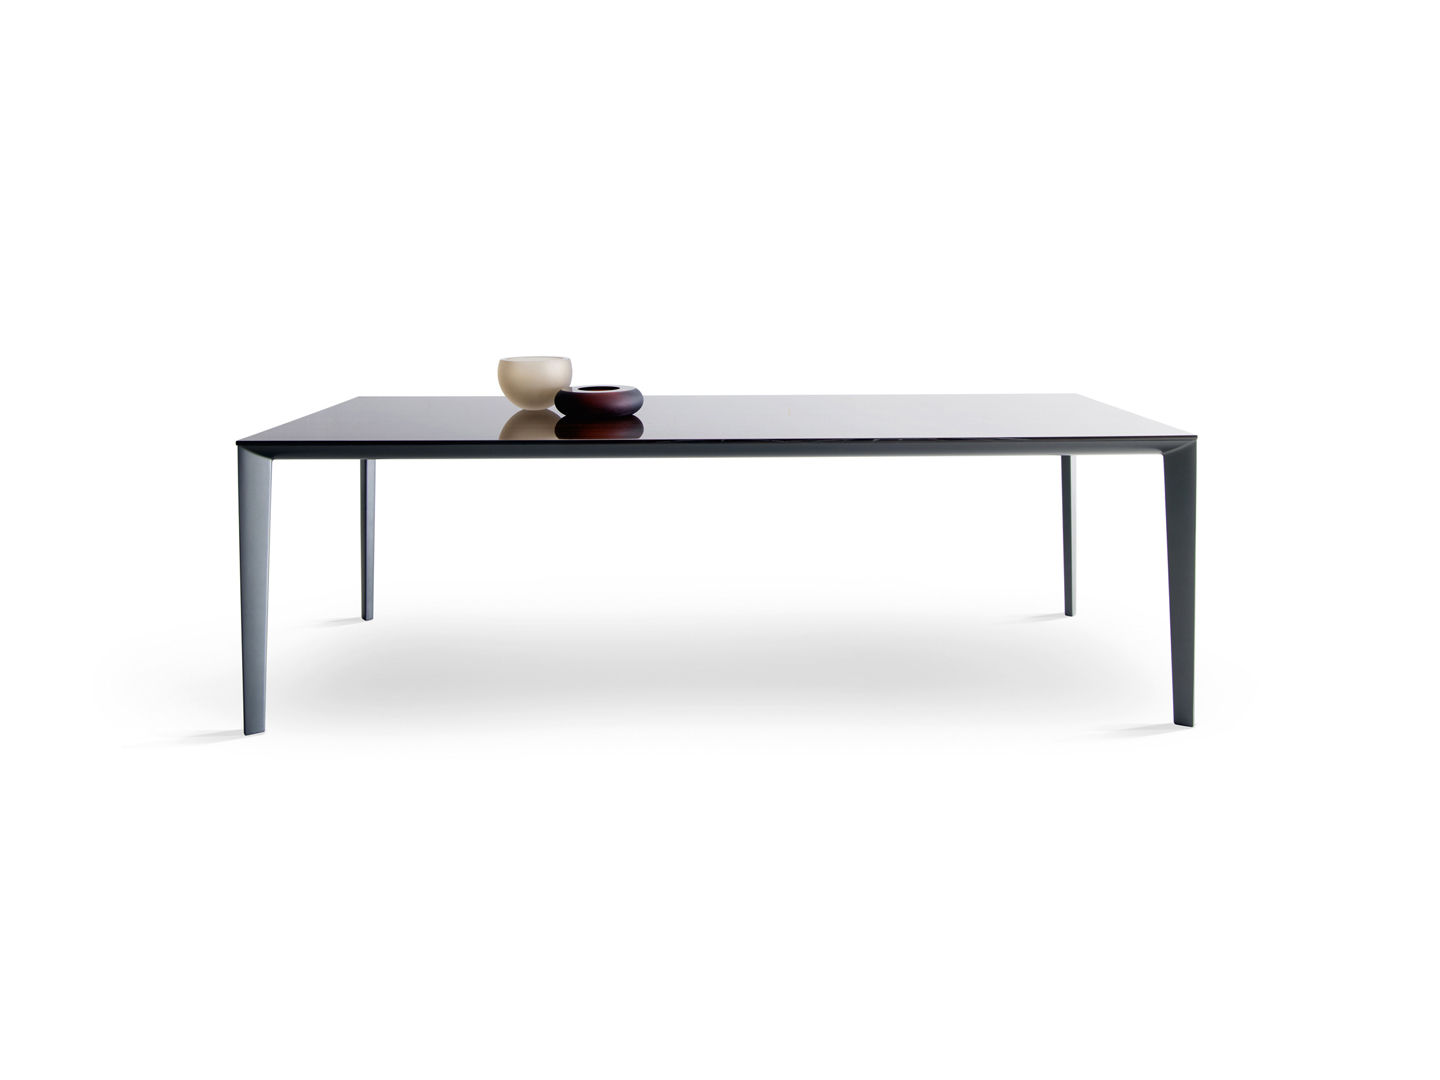 Filigree sont des tables d'appoint spéciales conçues par Rodolfo Dordoni et proposées par Peverelli.